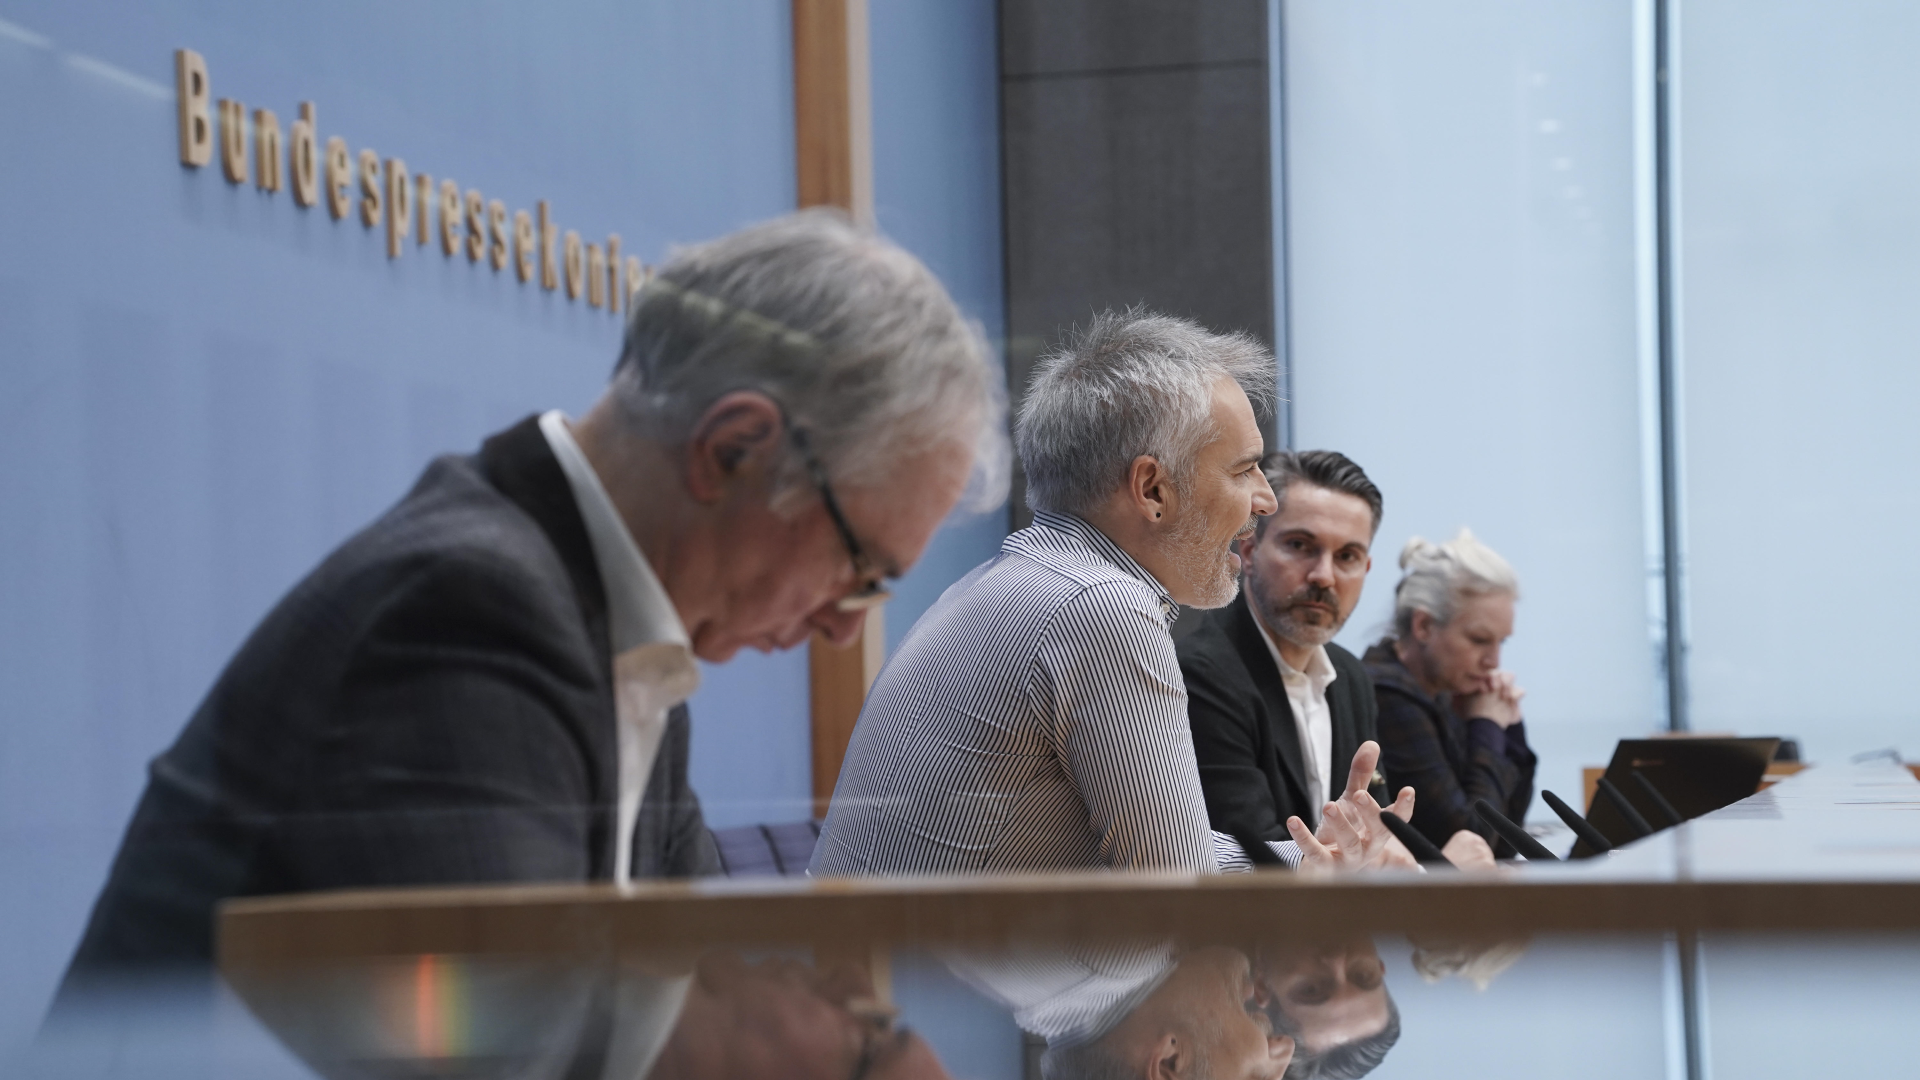 Heribert Hirte, Gerhard Schick und Fabio De Masi (v.l.n.r.) bei der gemeinsam Pressekonferenz der Bürgerinitiative Finanzwende | Foto: picture alliance / Flashpic | Jens Krick